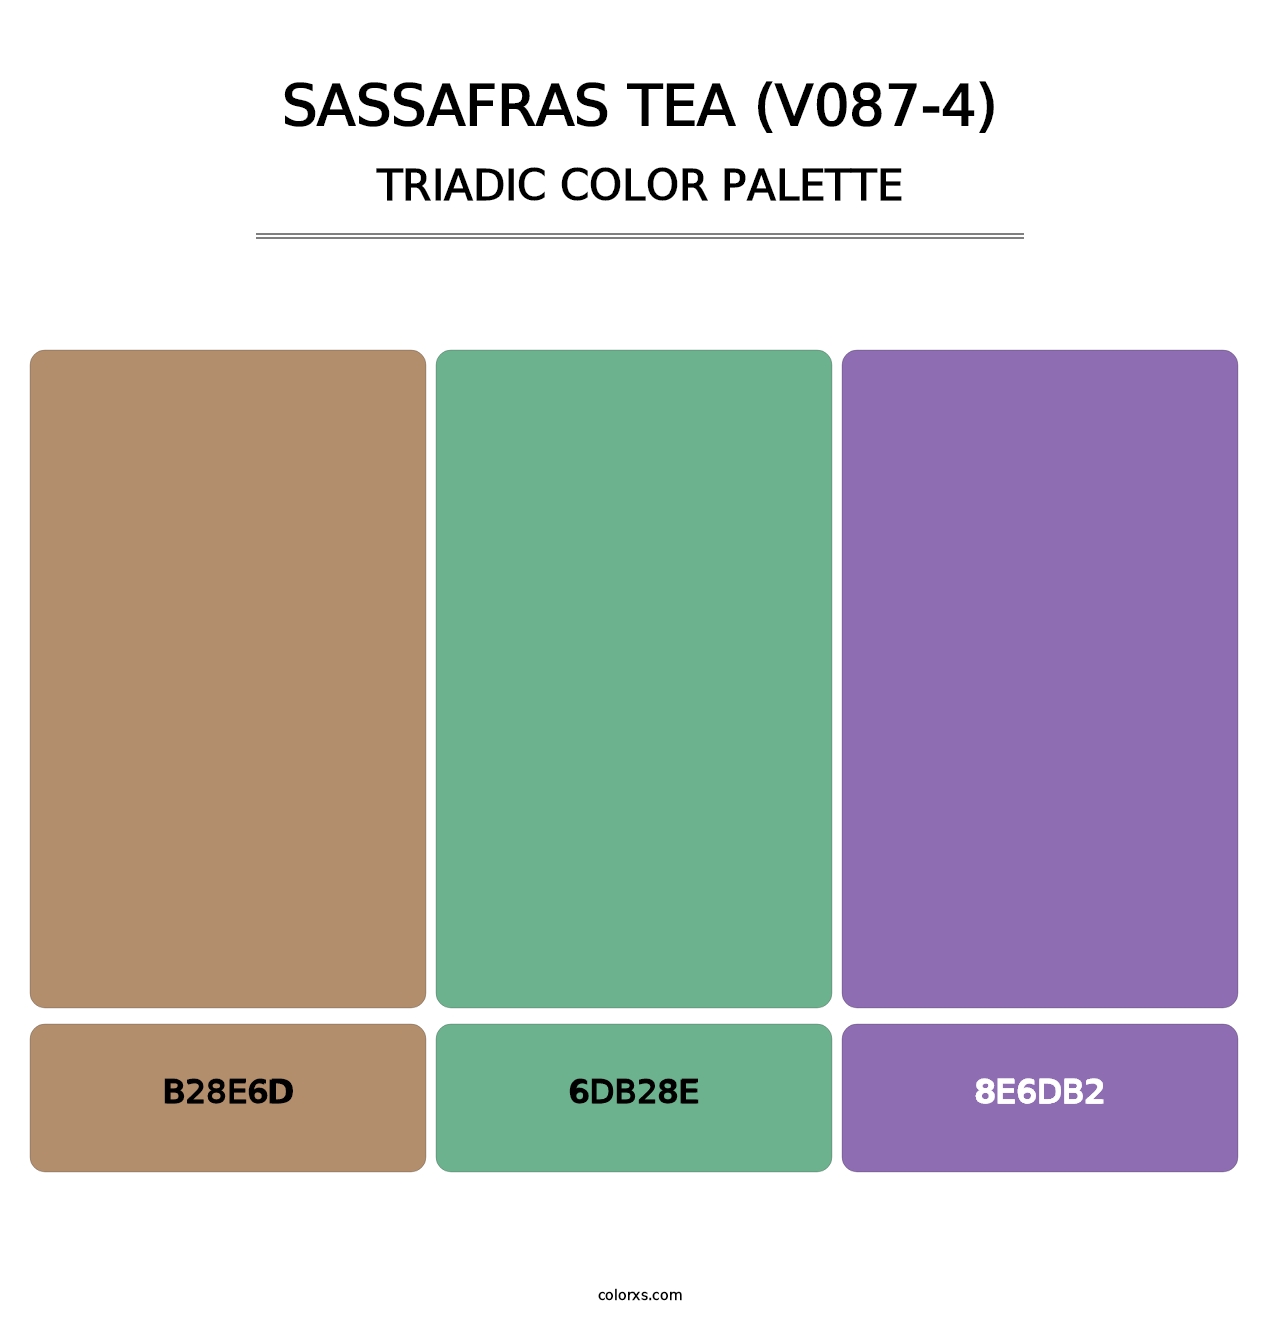 Sassafras Tea (V087-4) - Triadic Color Palette